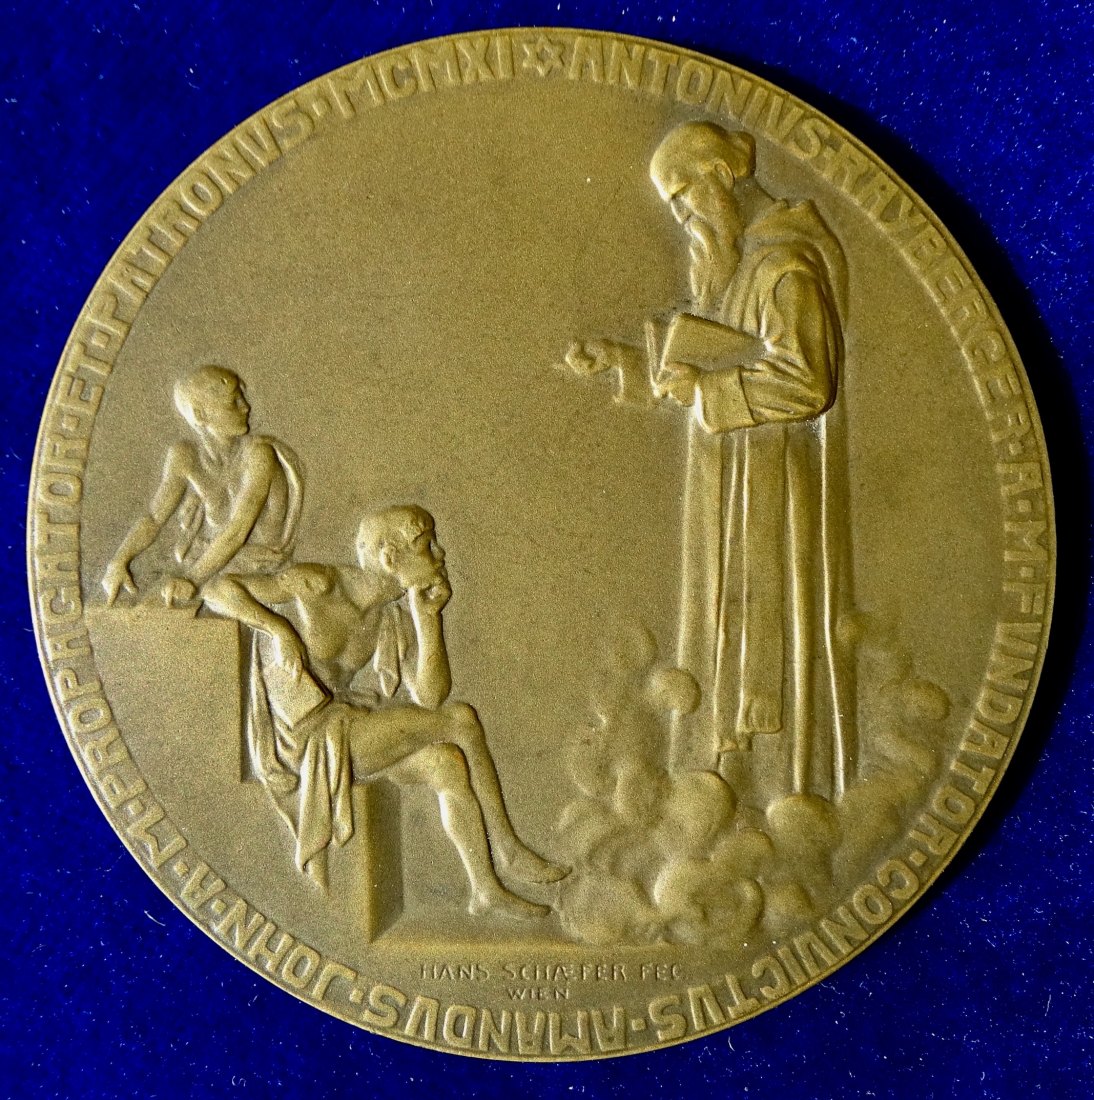  Österreich Stiftsgymnasium Melk 1911 Jugendstil Jubiläumsmedaille von Hans Schaefer   